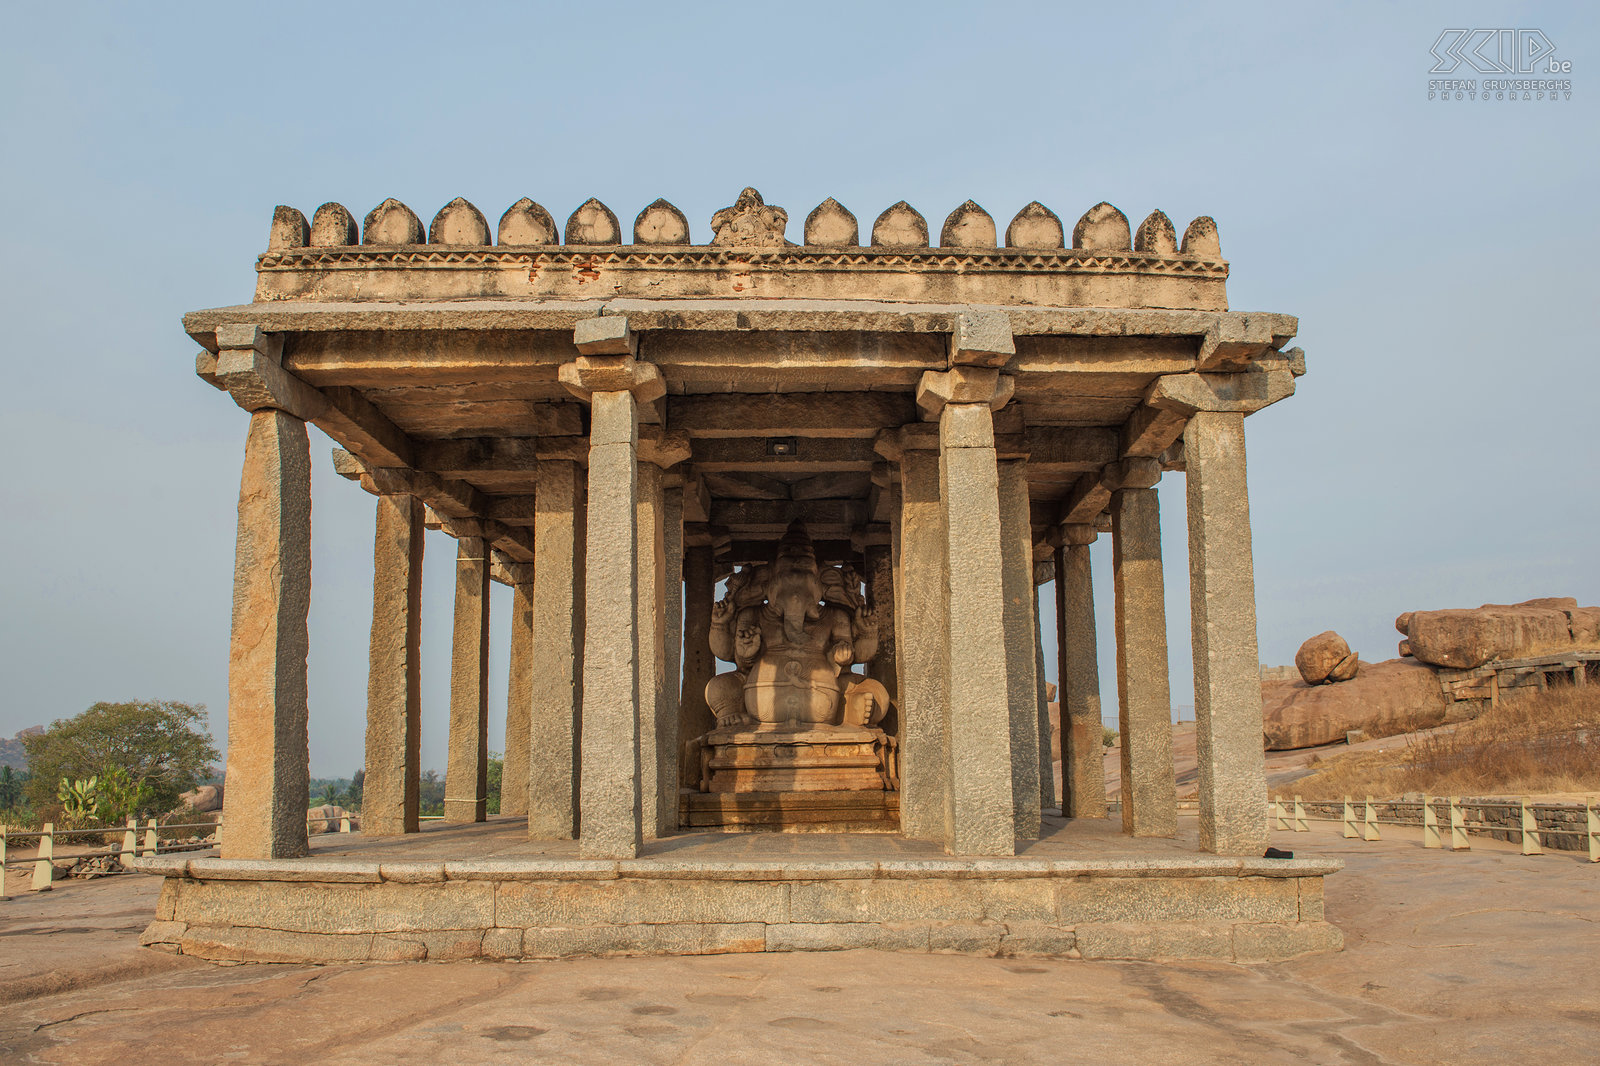 Hampi - Ganesha tempel Aan de zuidelijke uitloper van de Hemkuta heuvel is er een kleine tempel met een gigantisch standbeeld van Ganesha. Het is uit een enorm rotsblok gekapt en een van de grootste sculpturen in Hampi. De ruïnes van Hampi, dat de hoofdstad van het Vijayanagararijk was, staan op de lijst van het UNESCO werelderfgoed.  Stefan Cruysberghs